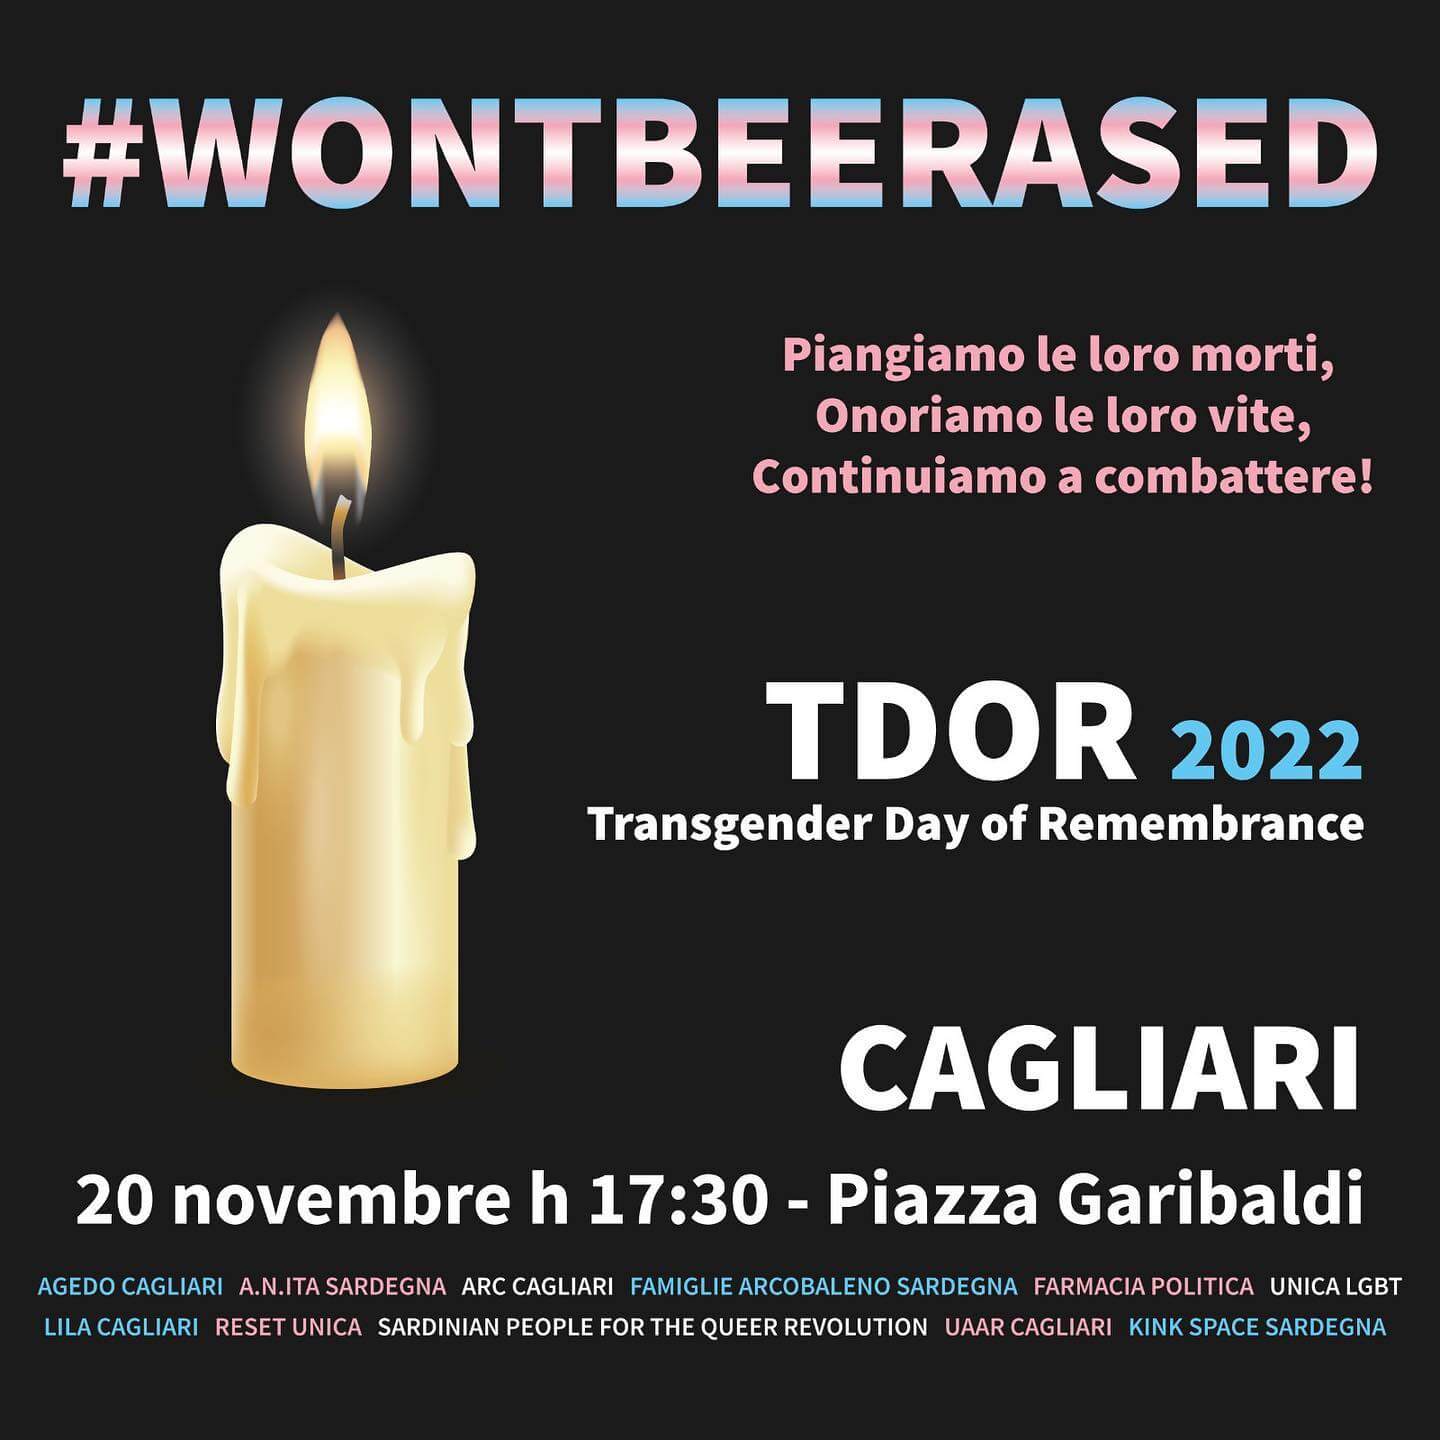 TDOR 2022, anche Cagliari in piazza per il Transgender Day of Remembrance - TDOR 2022 anche Cagliari - Gay.it